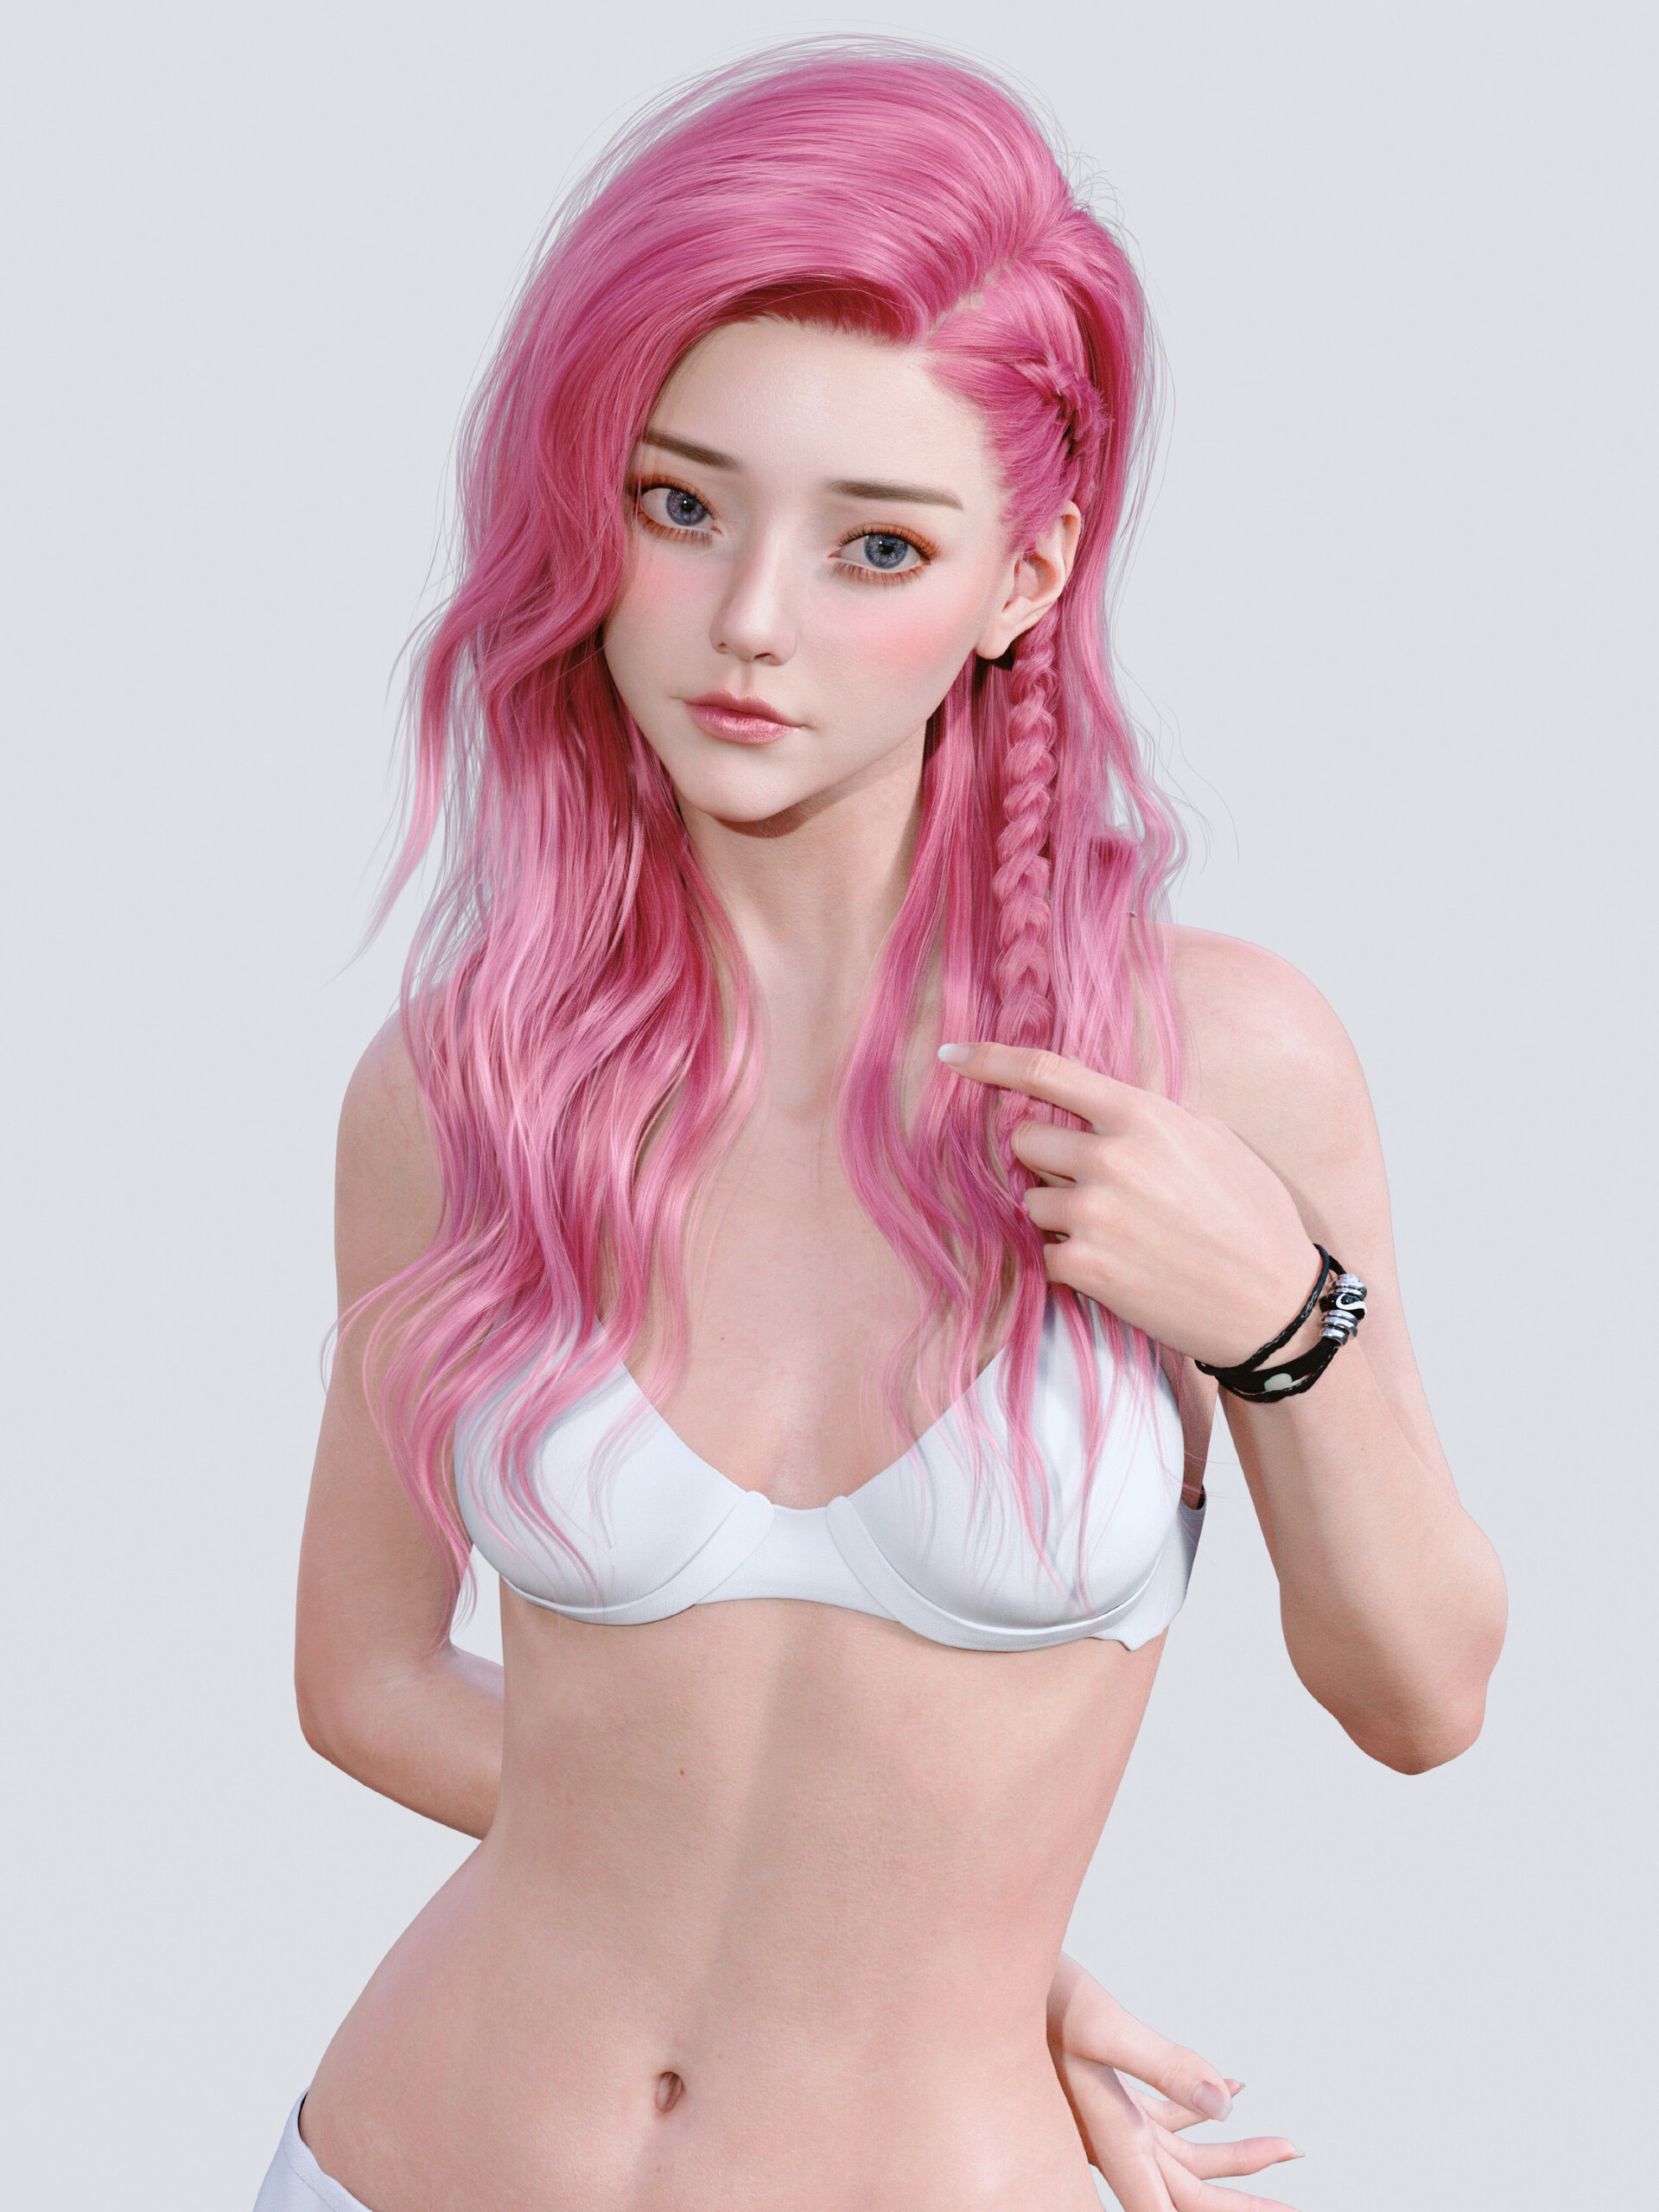 General 1920x2560 Chen Wang CGI women pink hair long hair braids bra blushing simple background white background